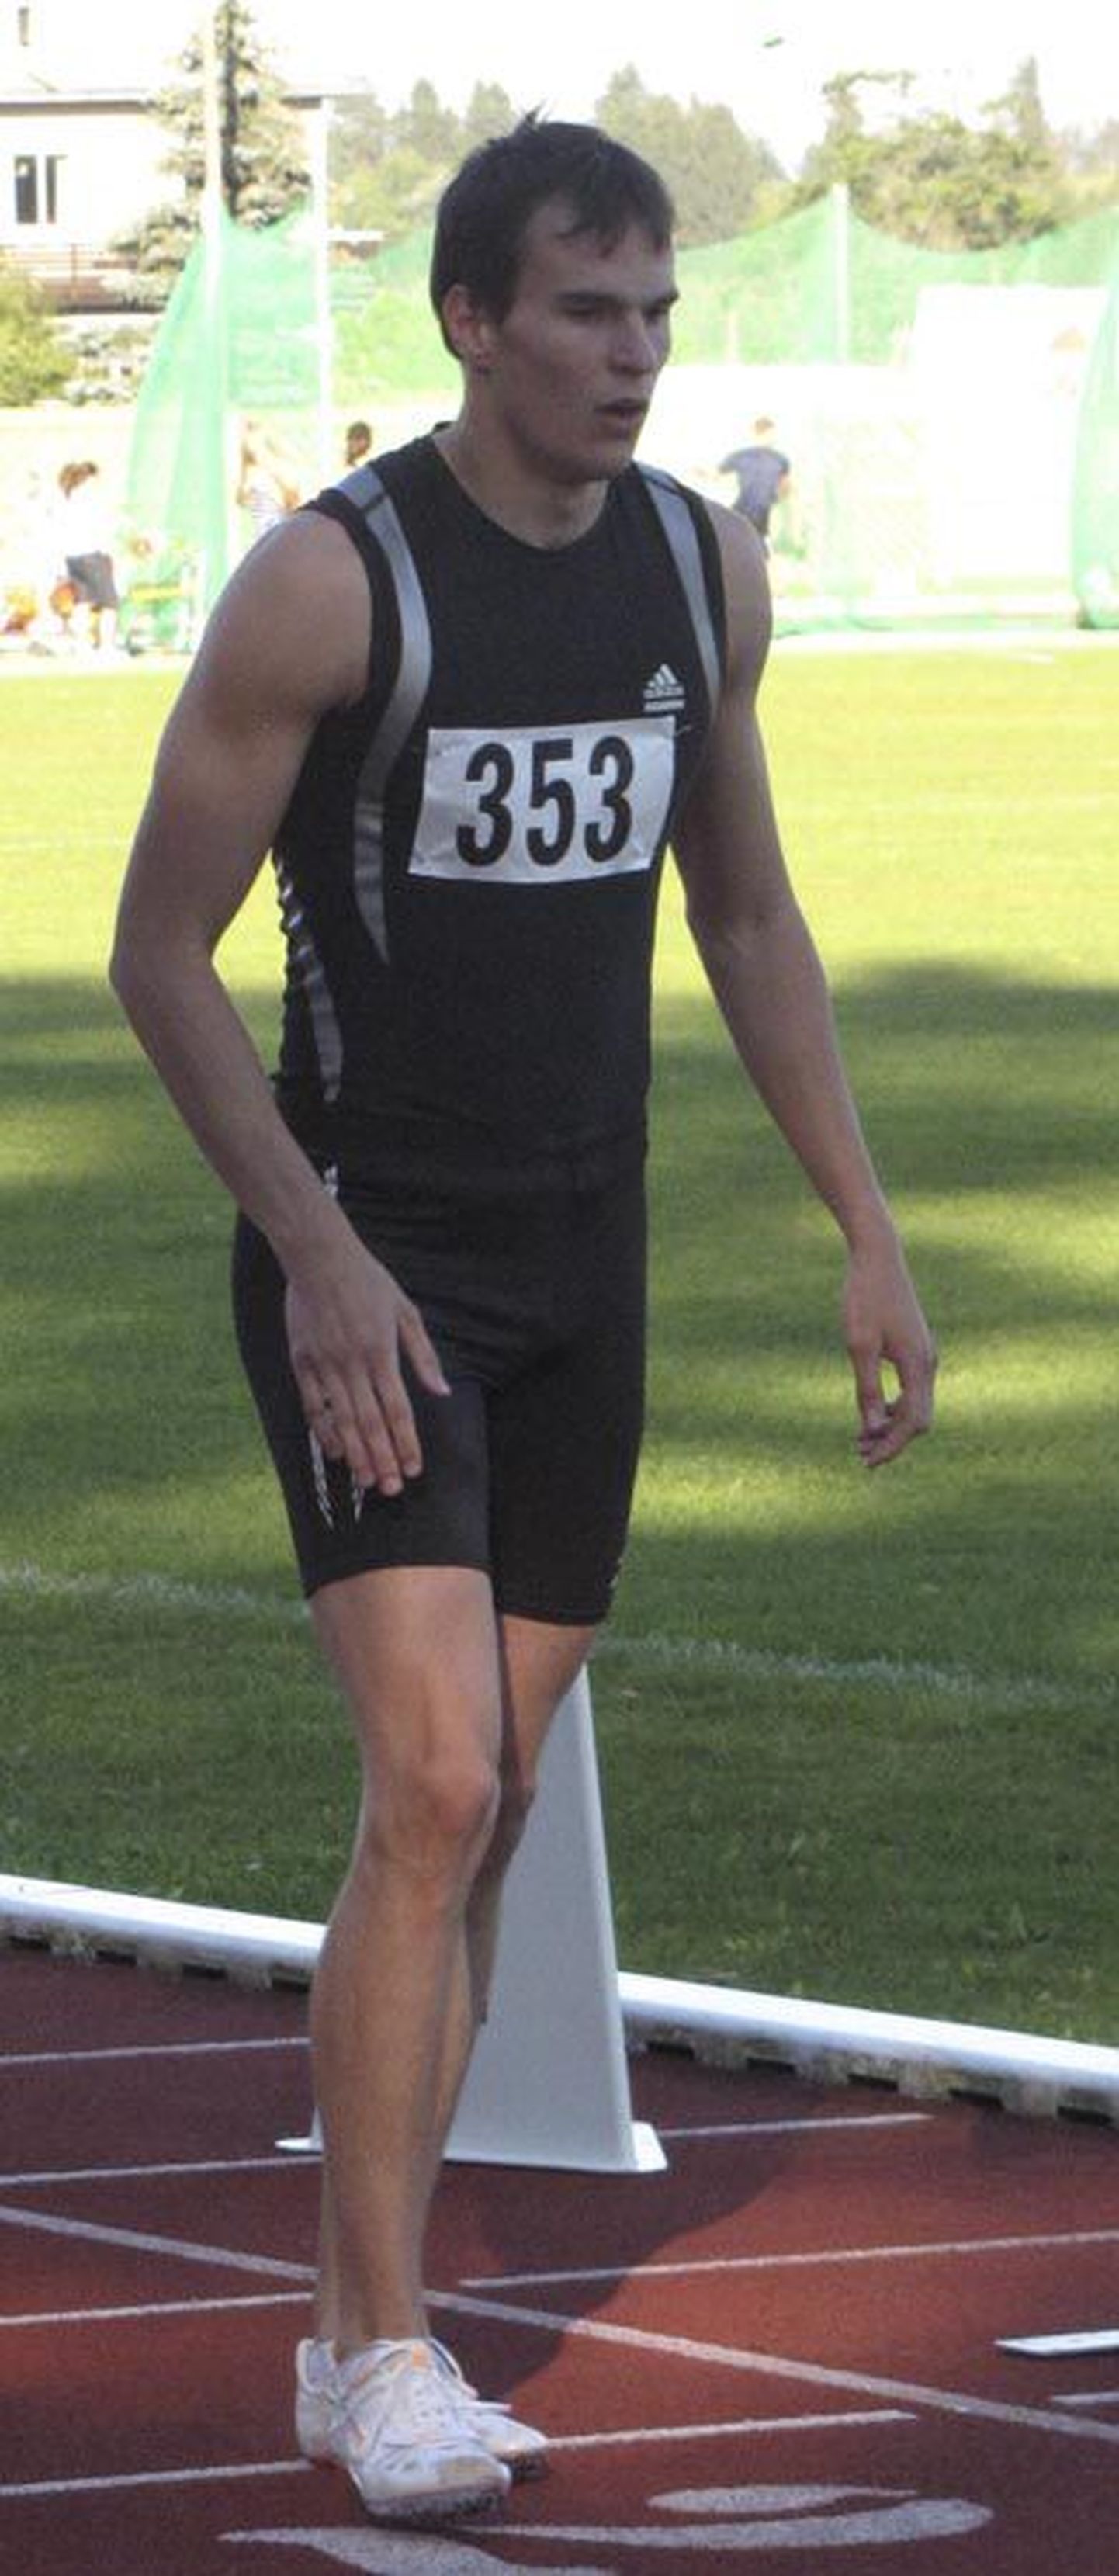 Eesti kergejõustiku sisemeistrivõistlustel 400 meetri jooksus püstitatud isiklik rekord andis Rauno Künnapuule hõbemedali. Pilt on tehtud möödunud suvel Viljandi staadionil.